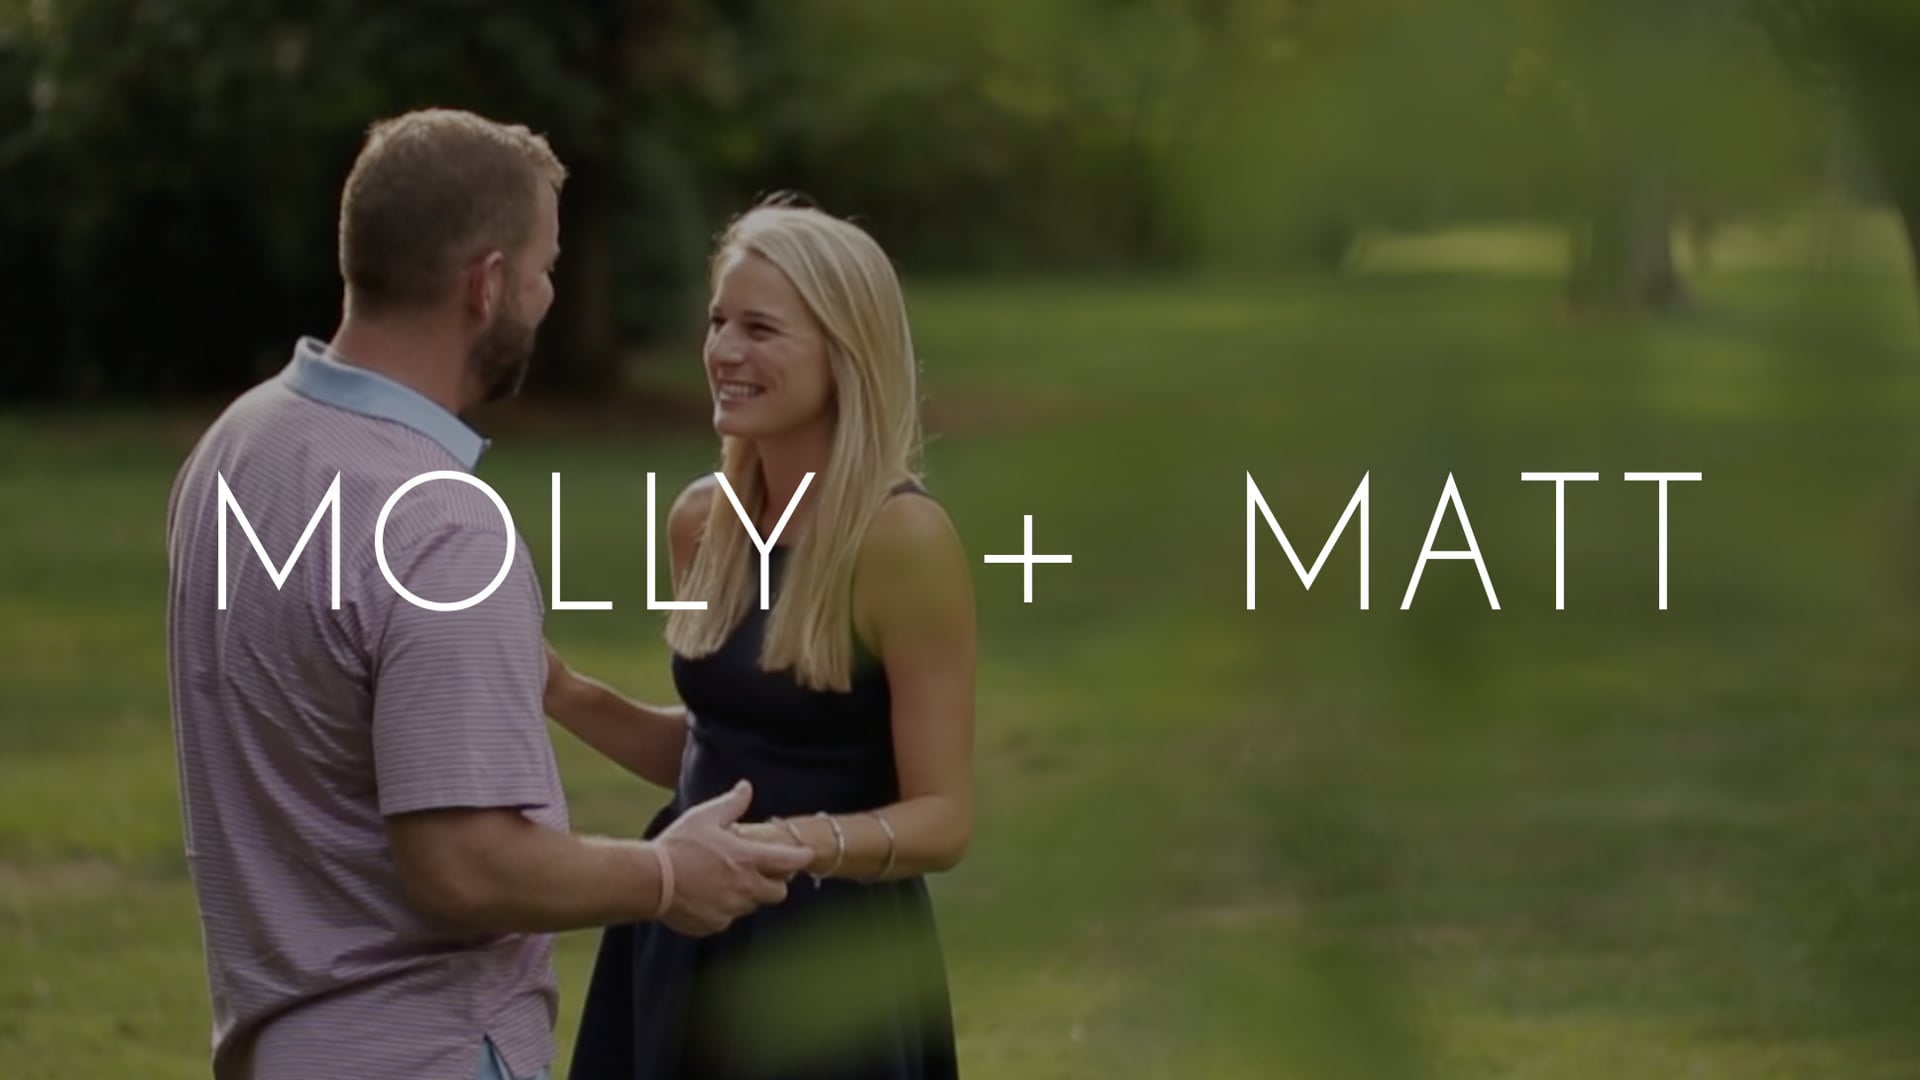 Molly + Matt // Love Story